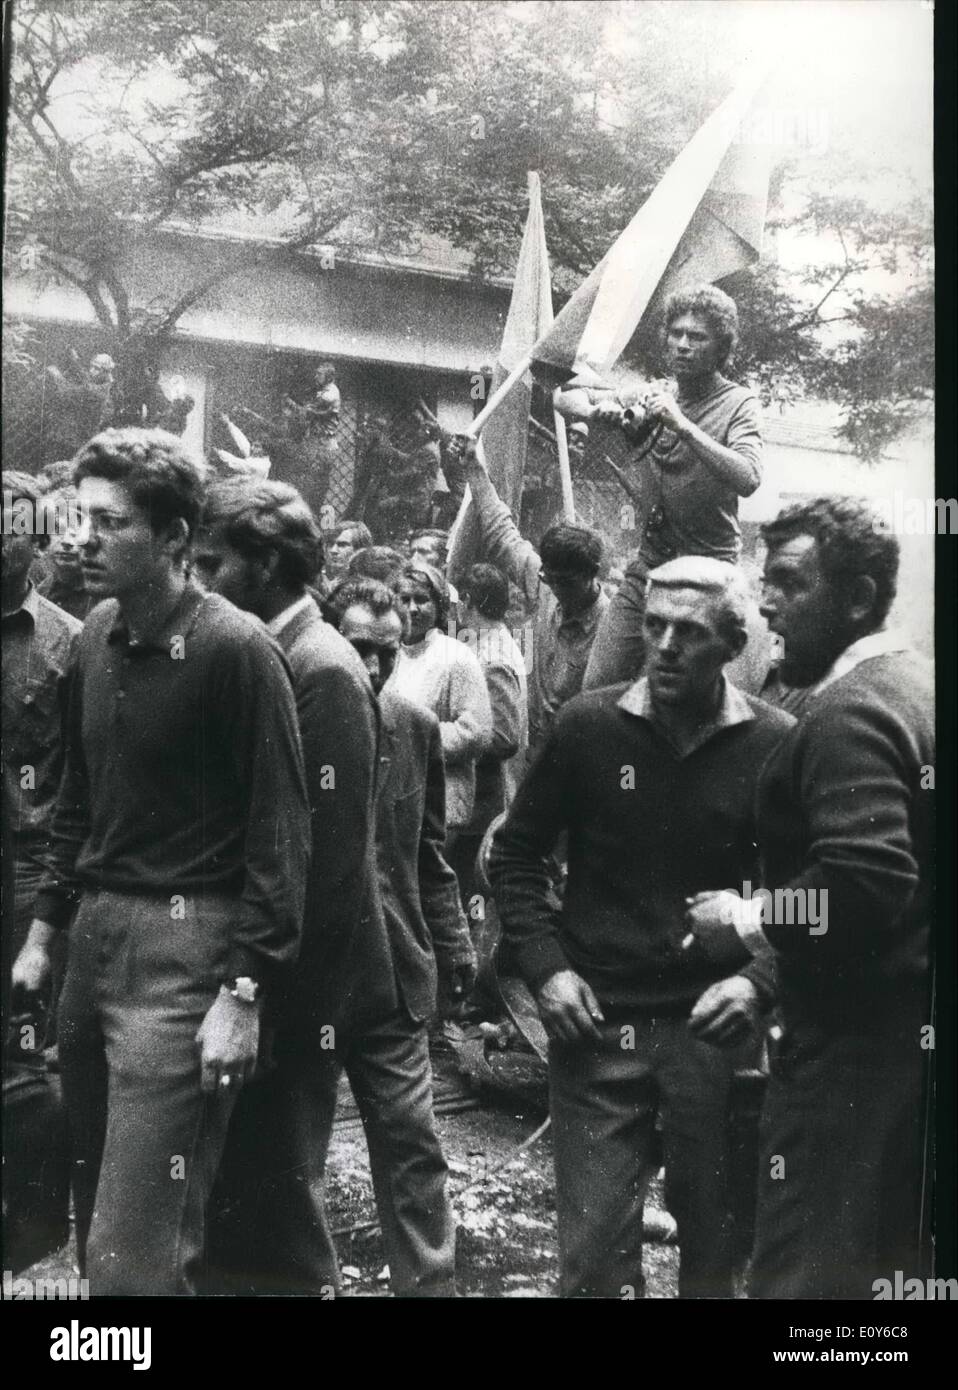 Le 12 décembre 1968 - Les troupes de la pays Warsaw-Pact ont défilé en Tchécoslovaquie au milieu de la nuit entre 20 et 21 août 1968. Sur la photo : La réaction des habitants après la marche dans des troupes russes. La fille de zoo de Francfort et de l'EPA. Banque D'Images